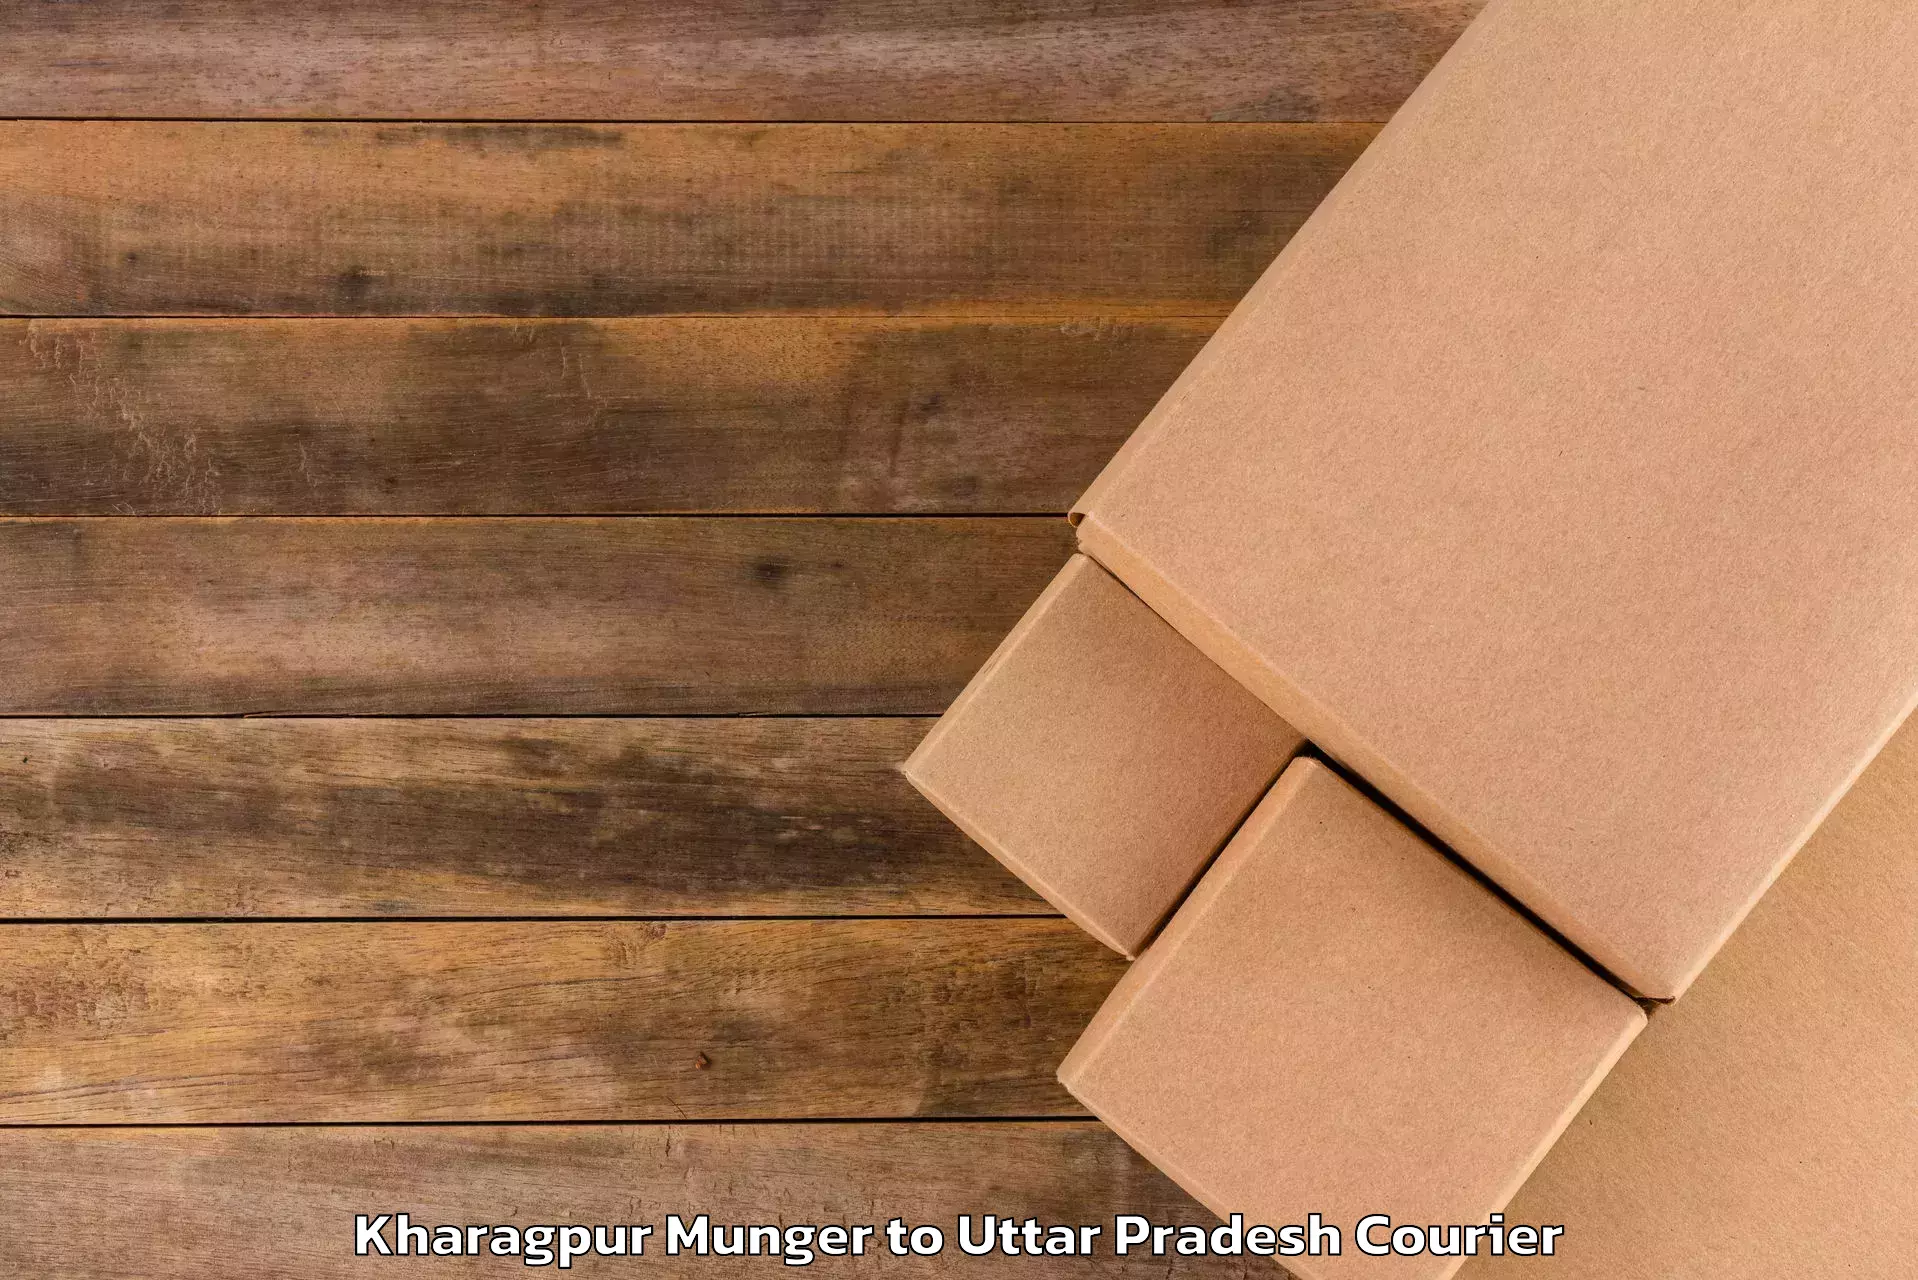 Global baggage shipping Kharagpur Munger to Chandausi